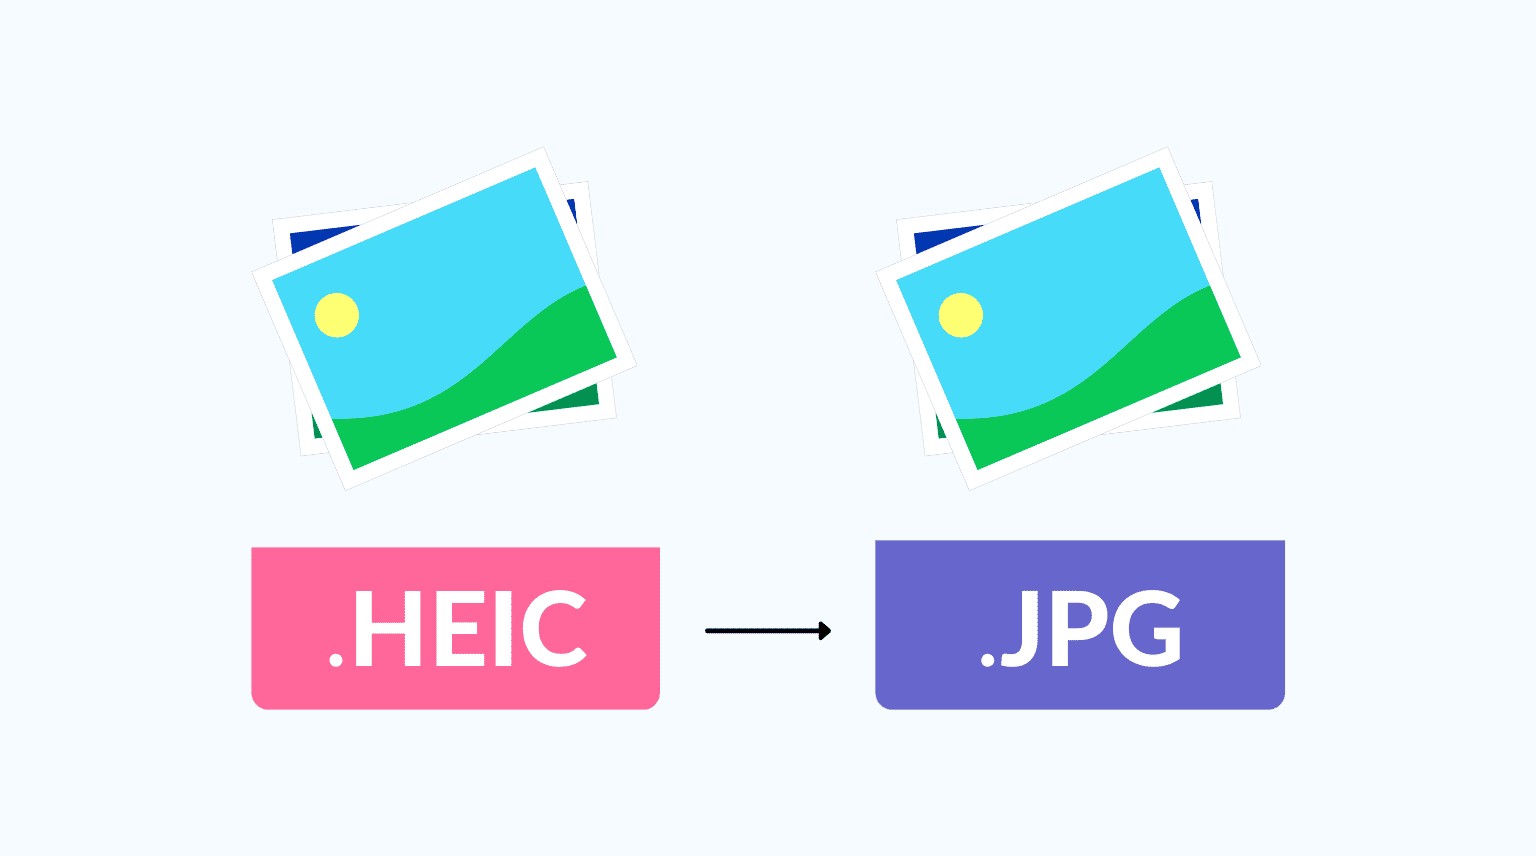 فرمت HEIC بهتر است یا JPG؟